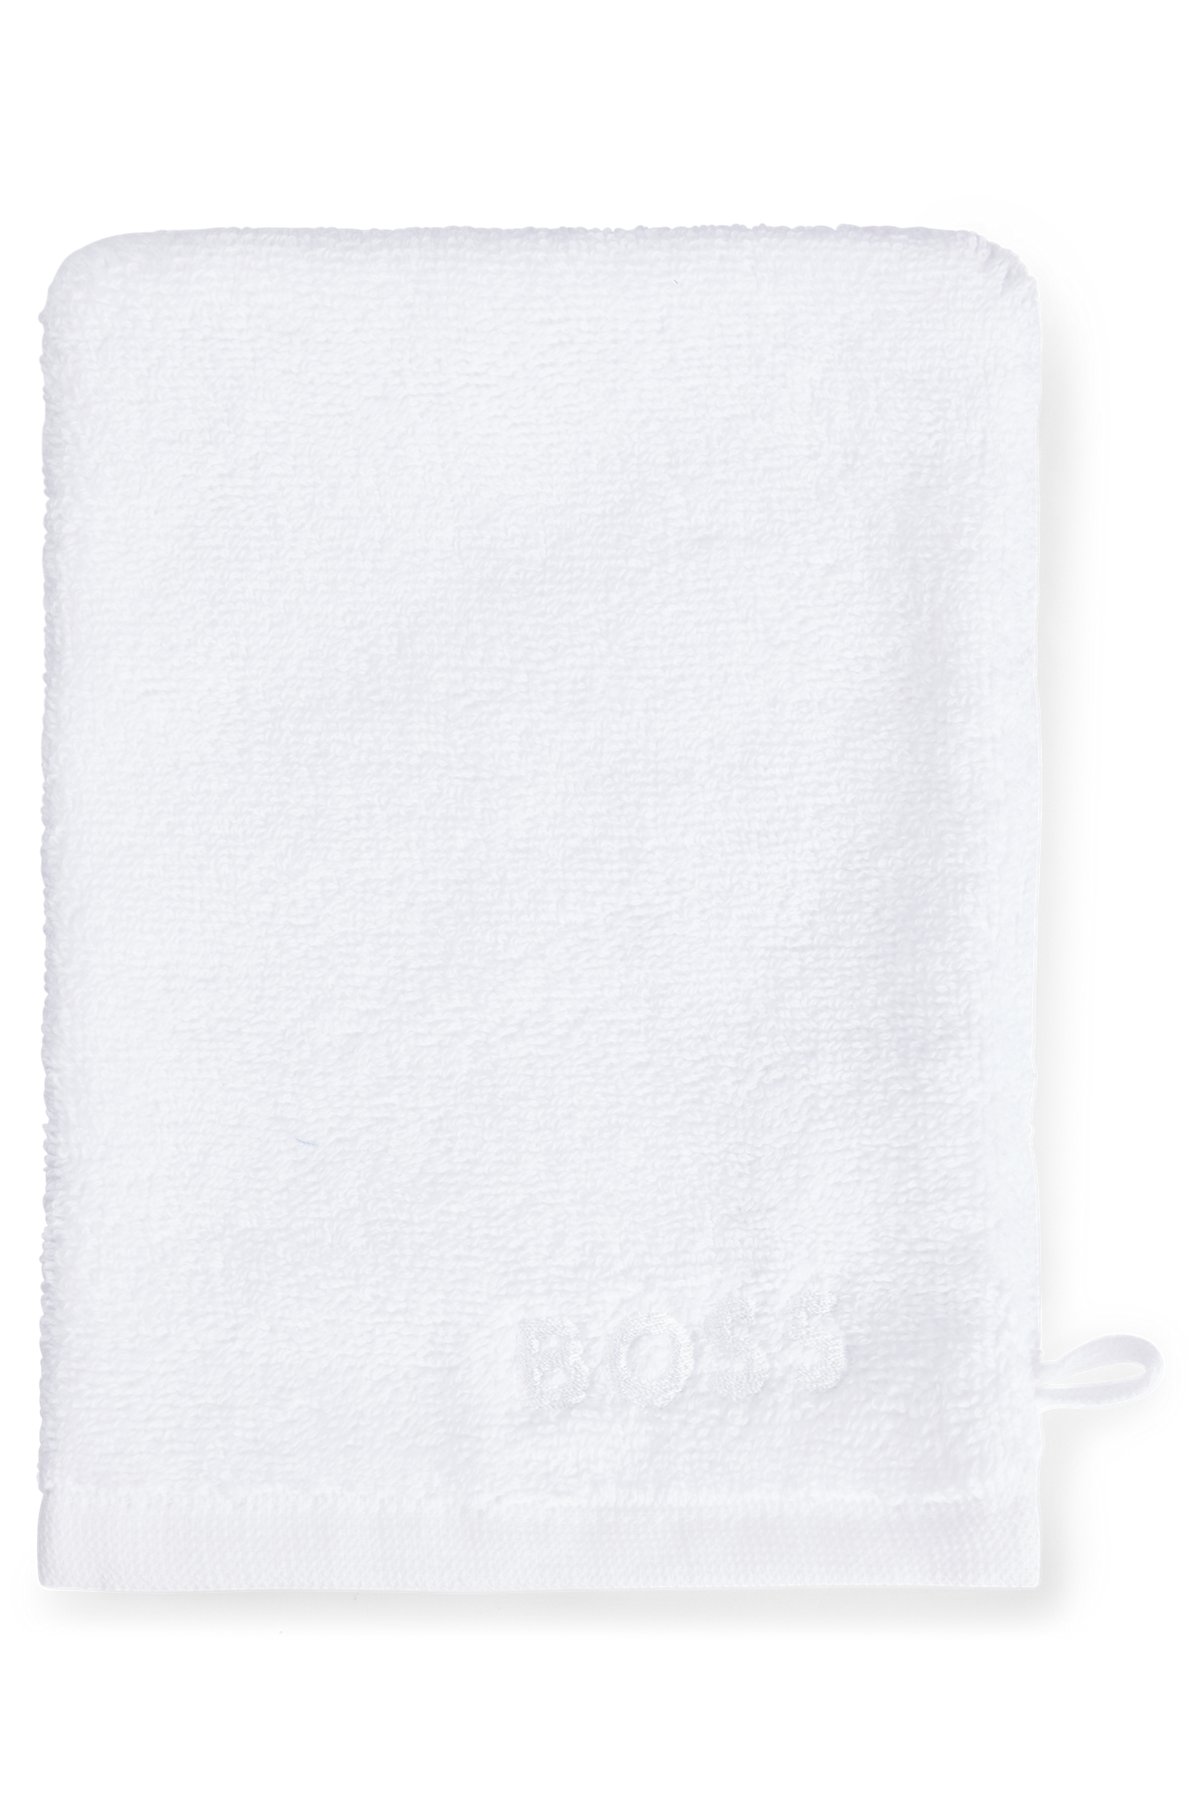 Waschhandschuh aus ägyptischer Baumwolle mit kontrastfarbenem Logo, Weiß